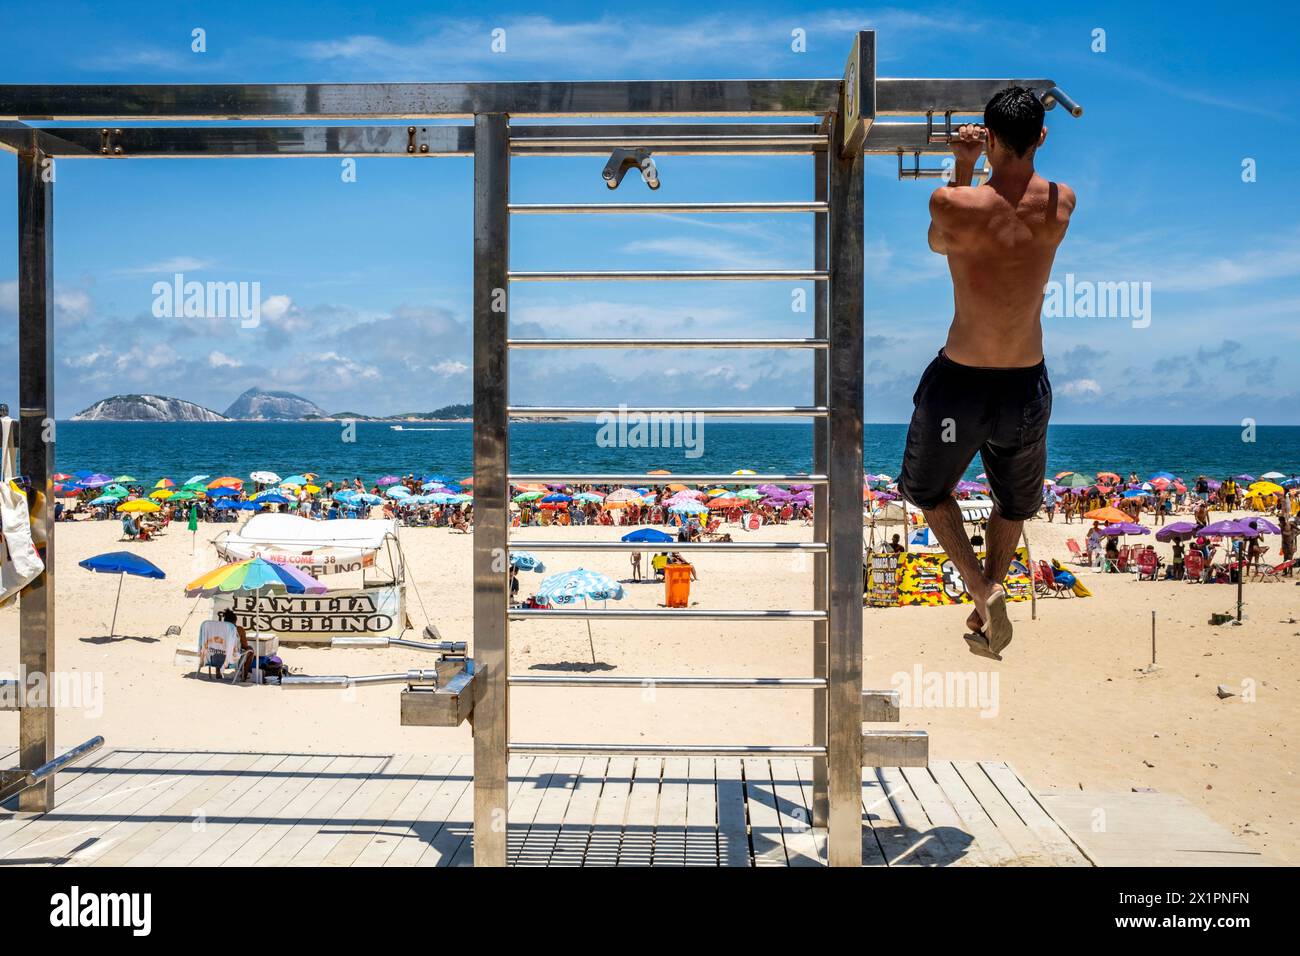 Un jeune homme faisant des tractions dans une station d'exercice sur la plage d'Ipanema, Ipanema, Rio de Janeiro, Brésil. Banque D'Images